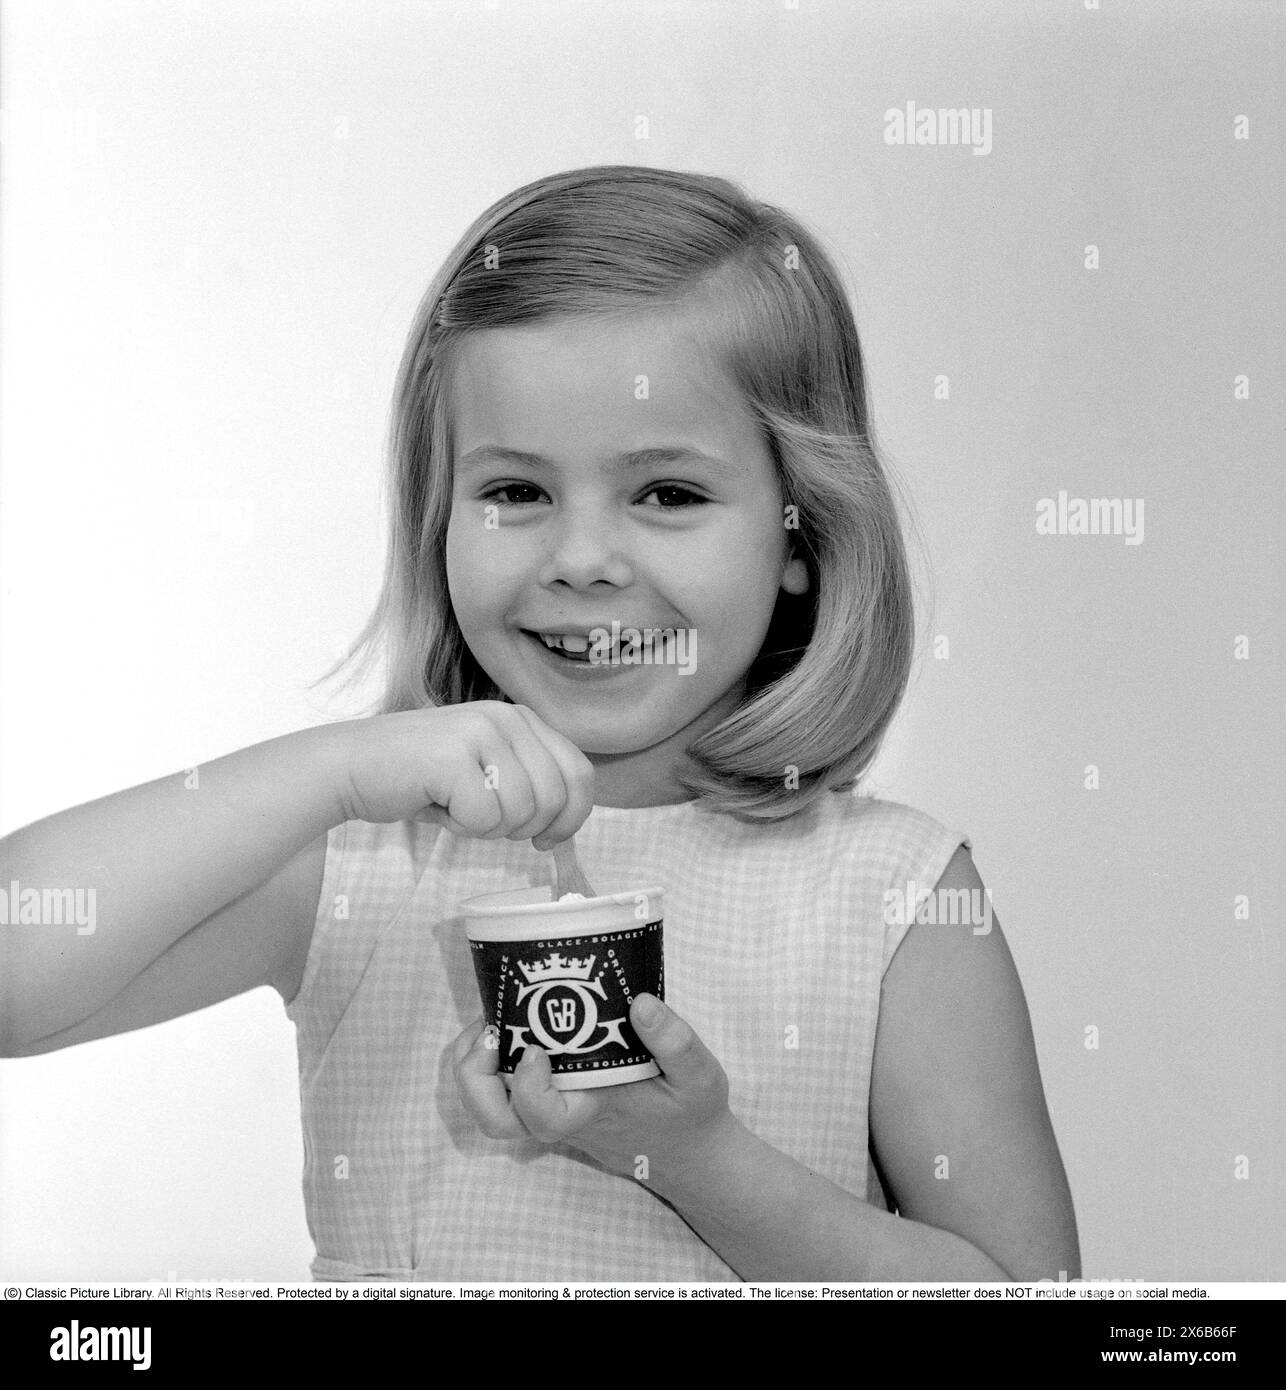 La crème glacée dans les années 1960 Une jeune fille mange de la crème glacée avec une cuillère dans une tasse en papier. 1961 Kristoffersson réf CS97-4 Banque D'Images